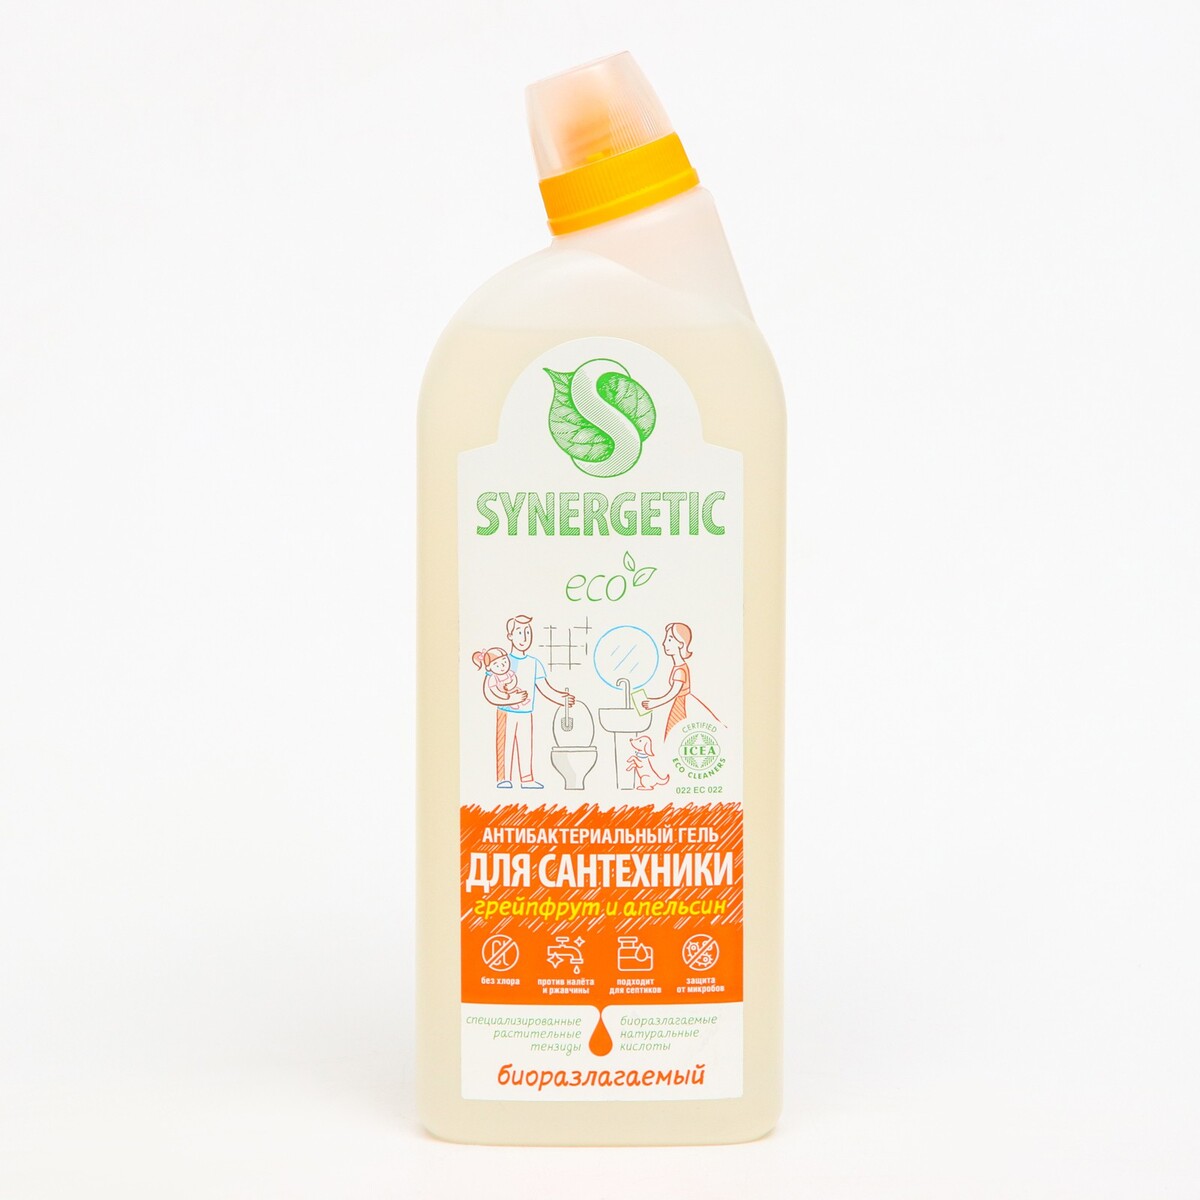 Средство биоразлагаемое для мытья сантехники synergetic грейпфрут и апельсин 5 в 1, 0,7л